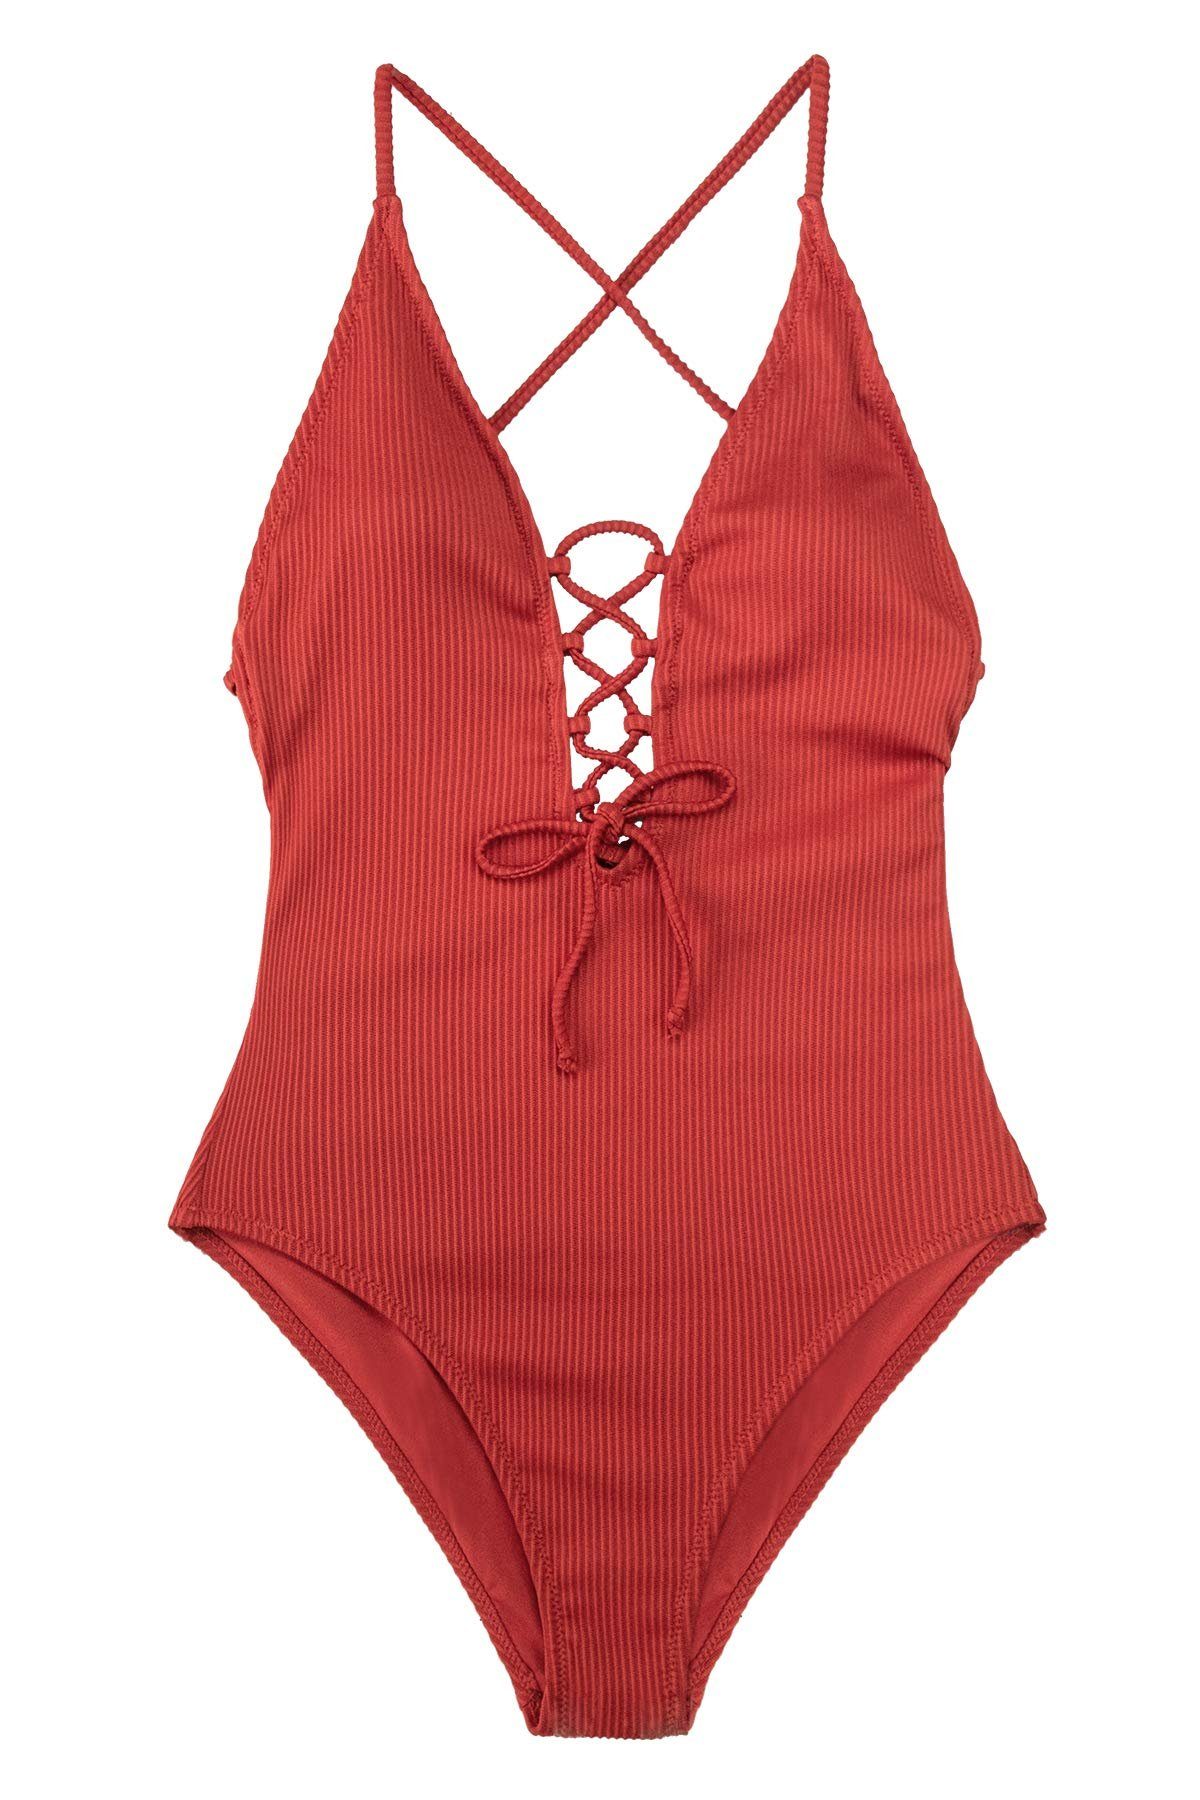 Leway Badekleid »Damen Badeanzug mit Schnürung Plunge Einteiler Einteilige  Bademode Swimsuit« online kaufen | OTTO